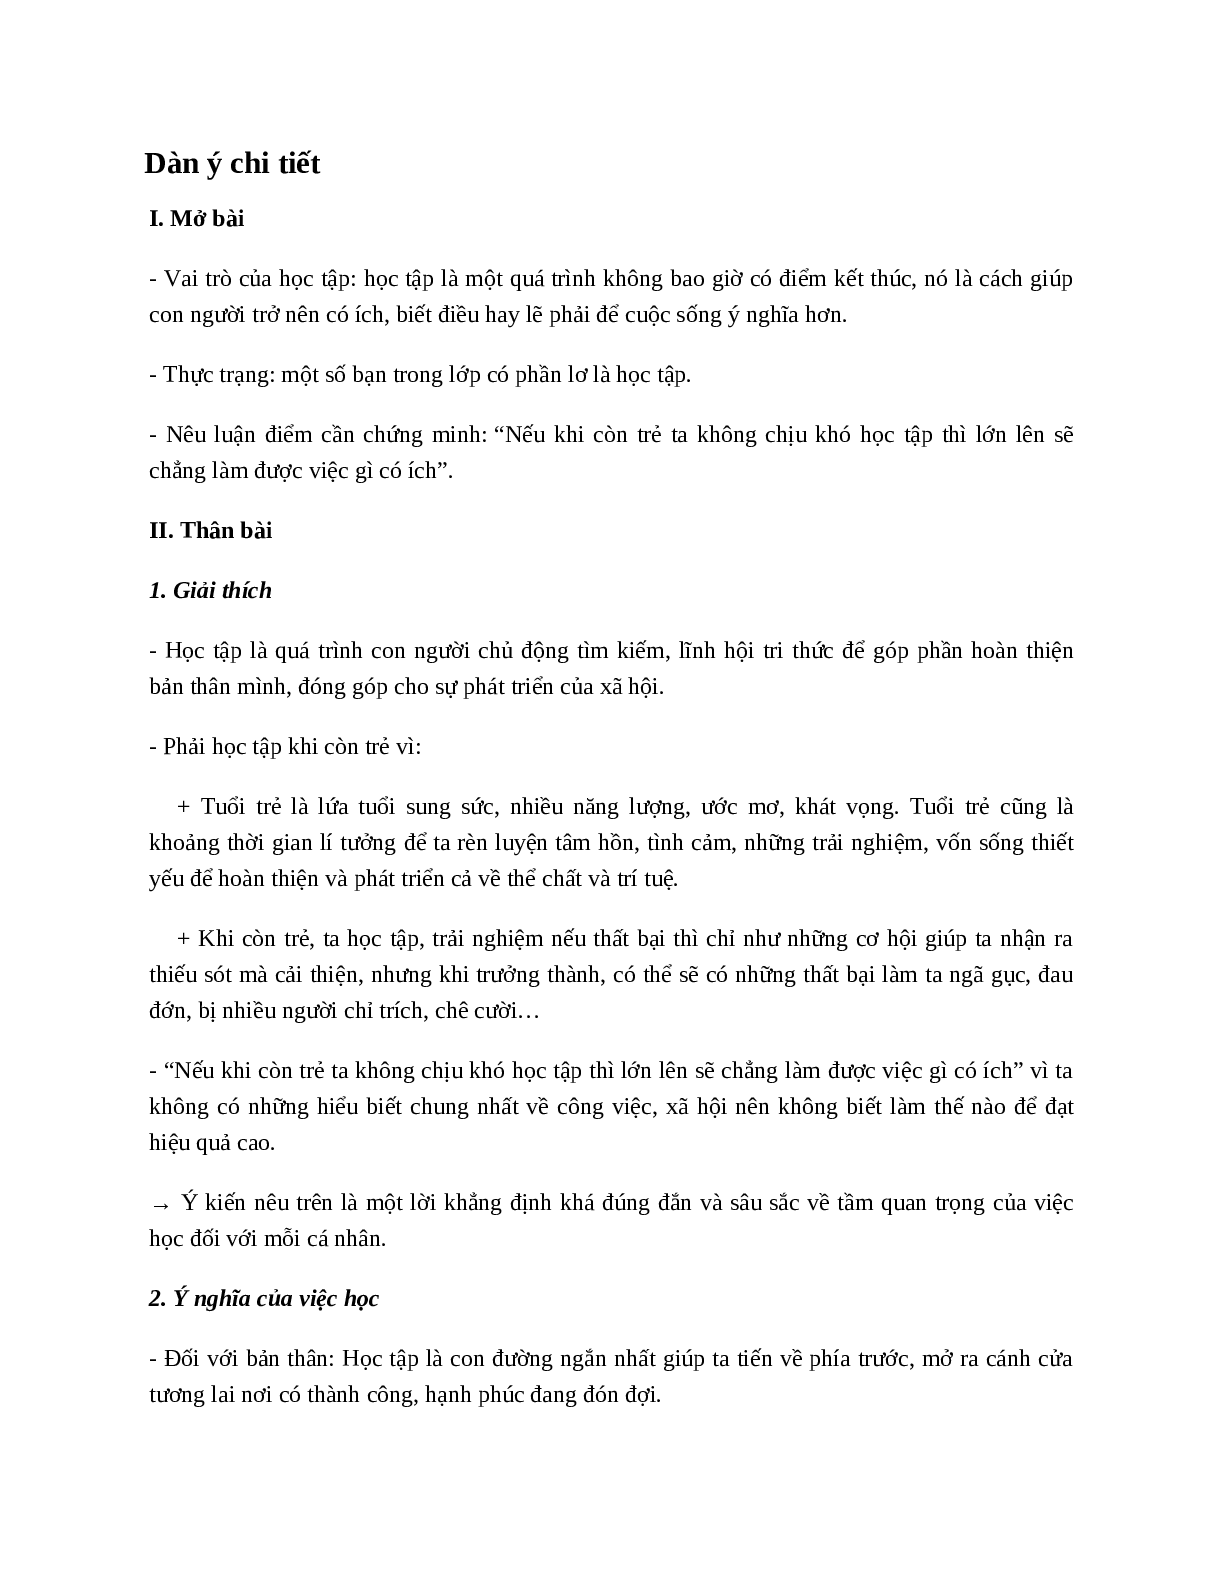 Em hãy viết 1 bài văn để thuyết phục bạn khi bạn lơ là học tập hay nhất (8 mẫu) (trang 4)